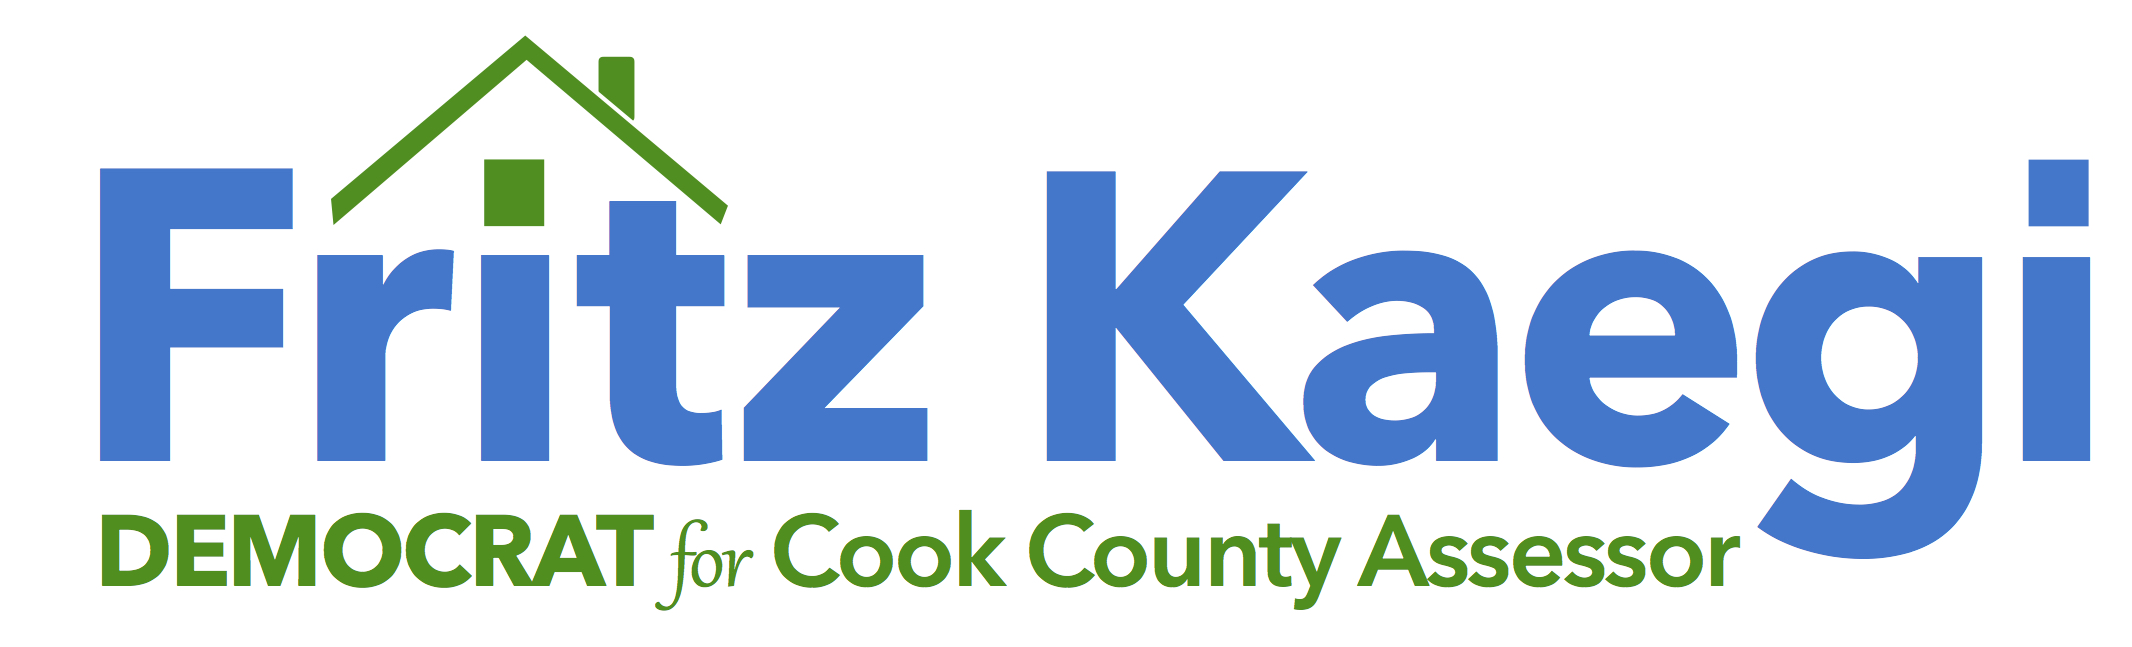 Fritz Kaegi for Cook County Assessor